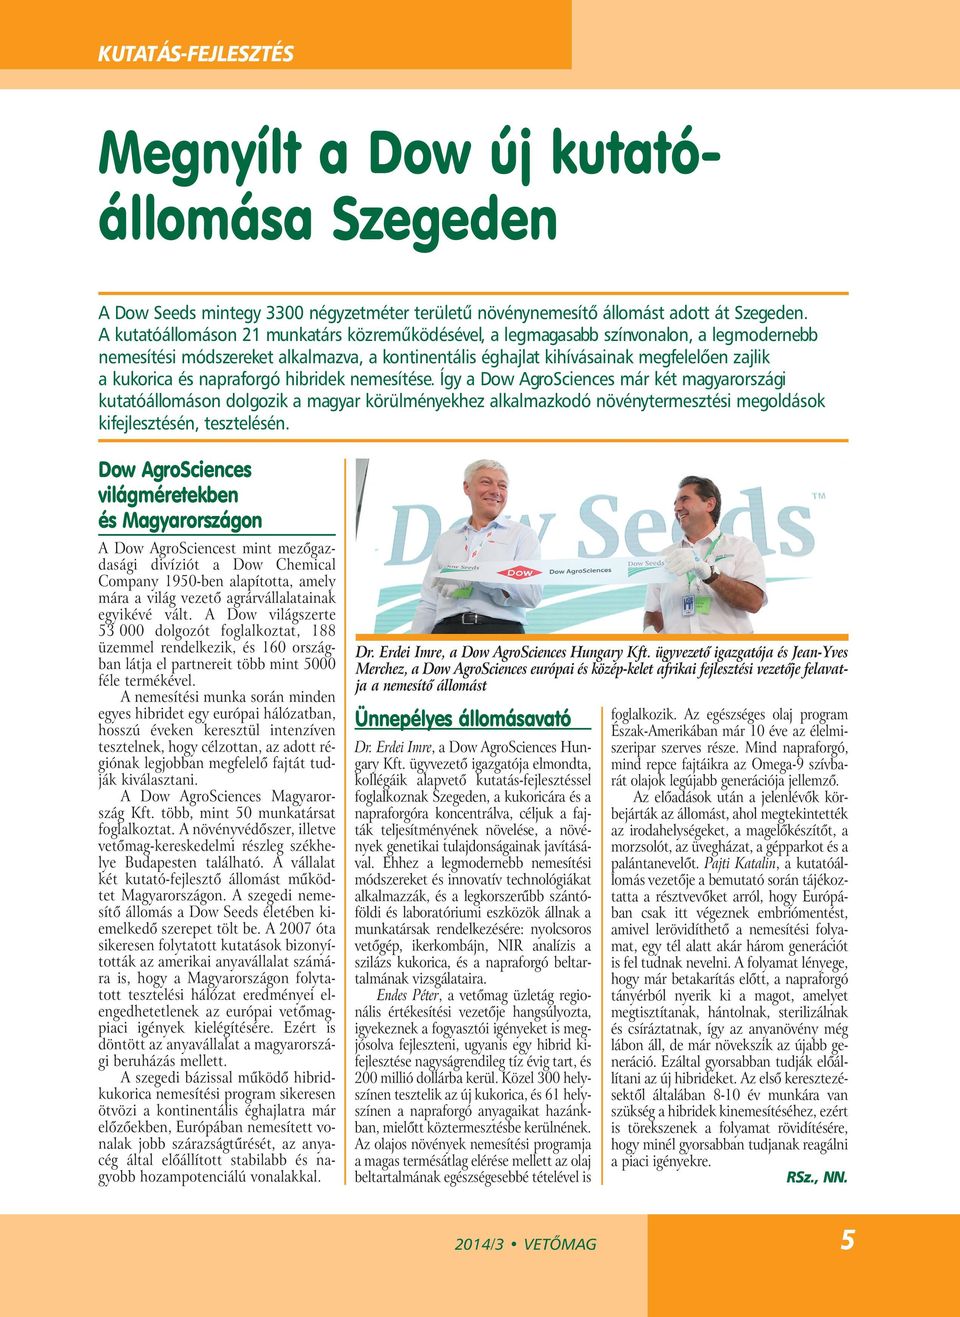 napraforgó hibridek nemesítése. Így a Dow AgroSciences már két magyarországi kutatóállomáson dolgozik a magyar körülményekhez alkalmazkodó növénytermesztési megoldások kifejlesztésén, tesztelésén.